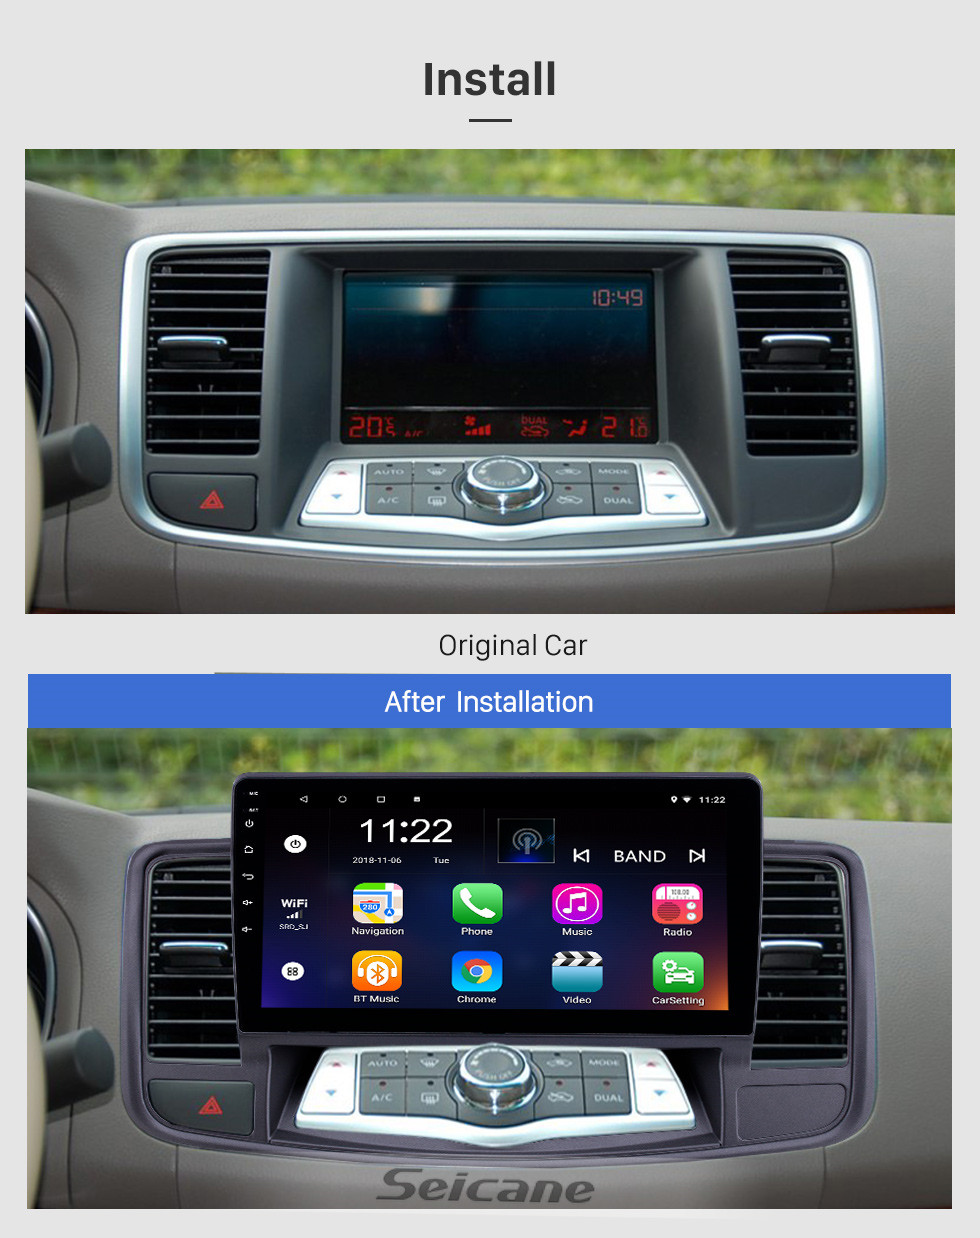 Seicane 2009-2013 Nissan Old Teana Android 10.0 Pantalla táctil 10.1 pulgadas Unidad principal Bluetooth Navegación GPS Radio con soporte AUX WIFI OBD2 DVR SWC Carplay